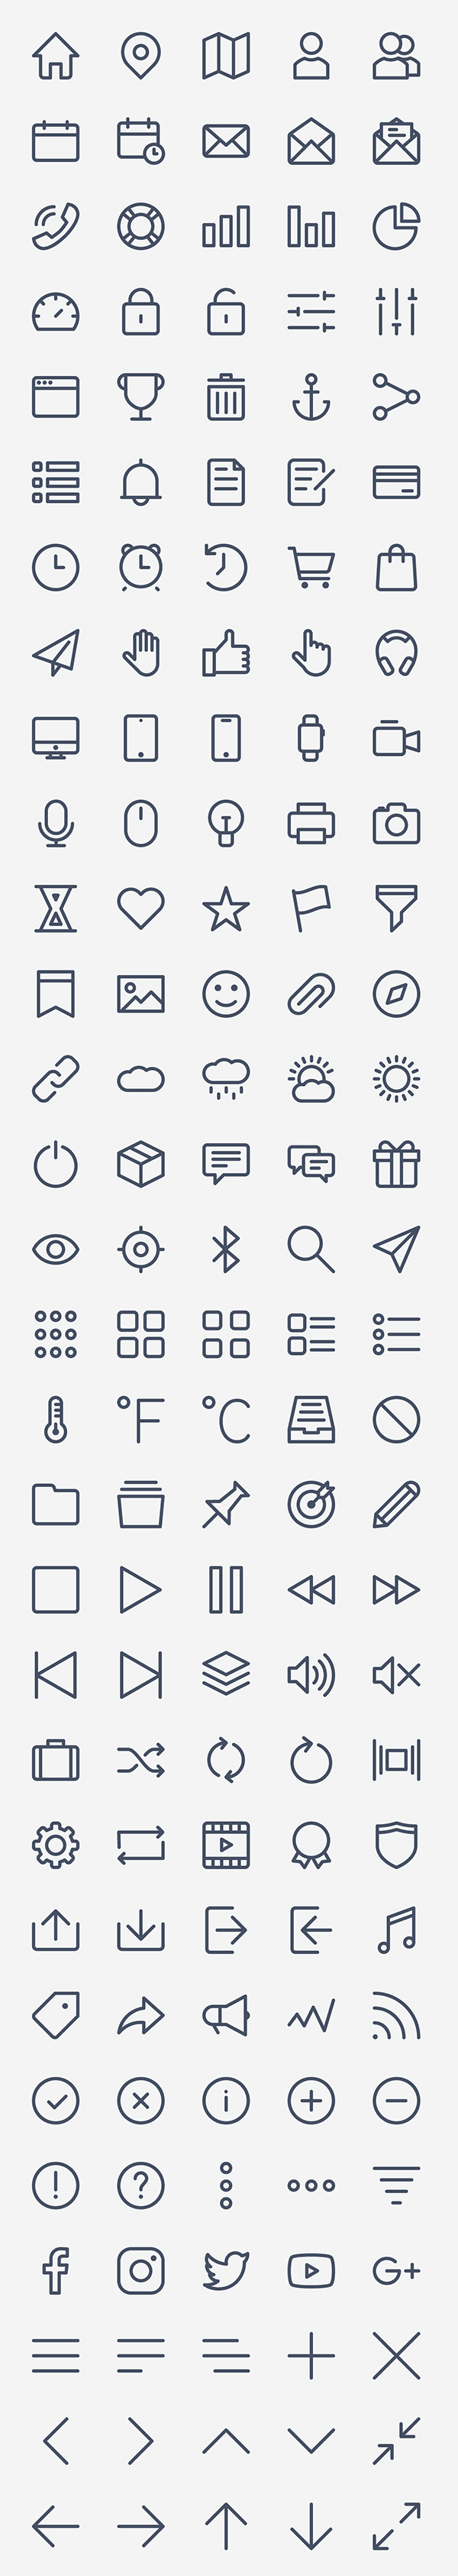 Free Basic Icon Set